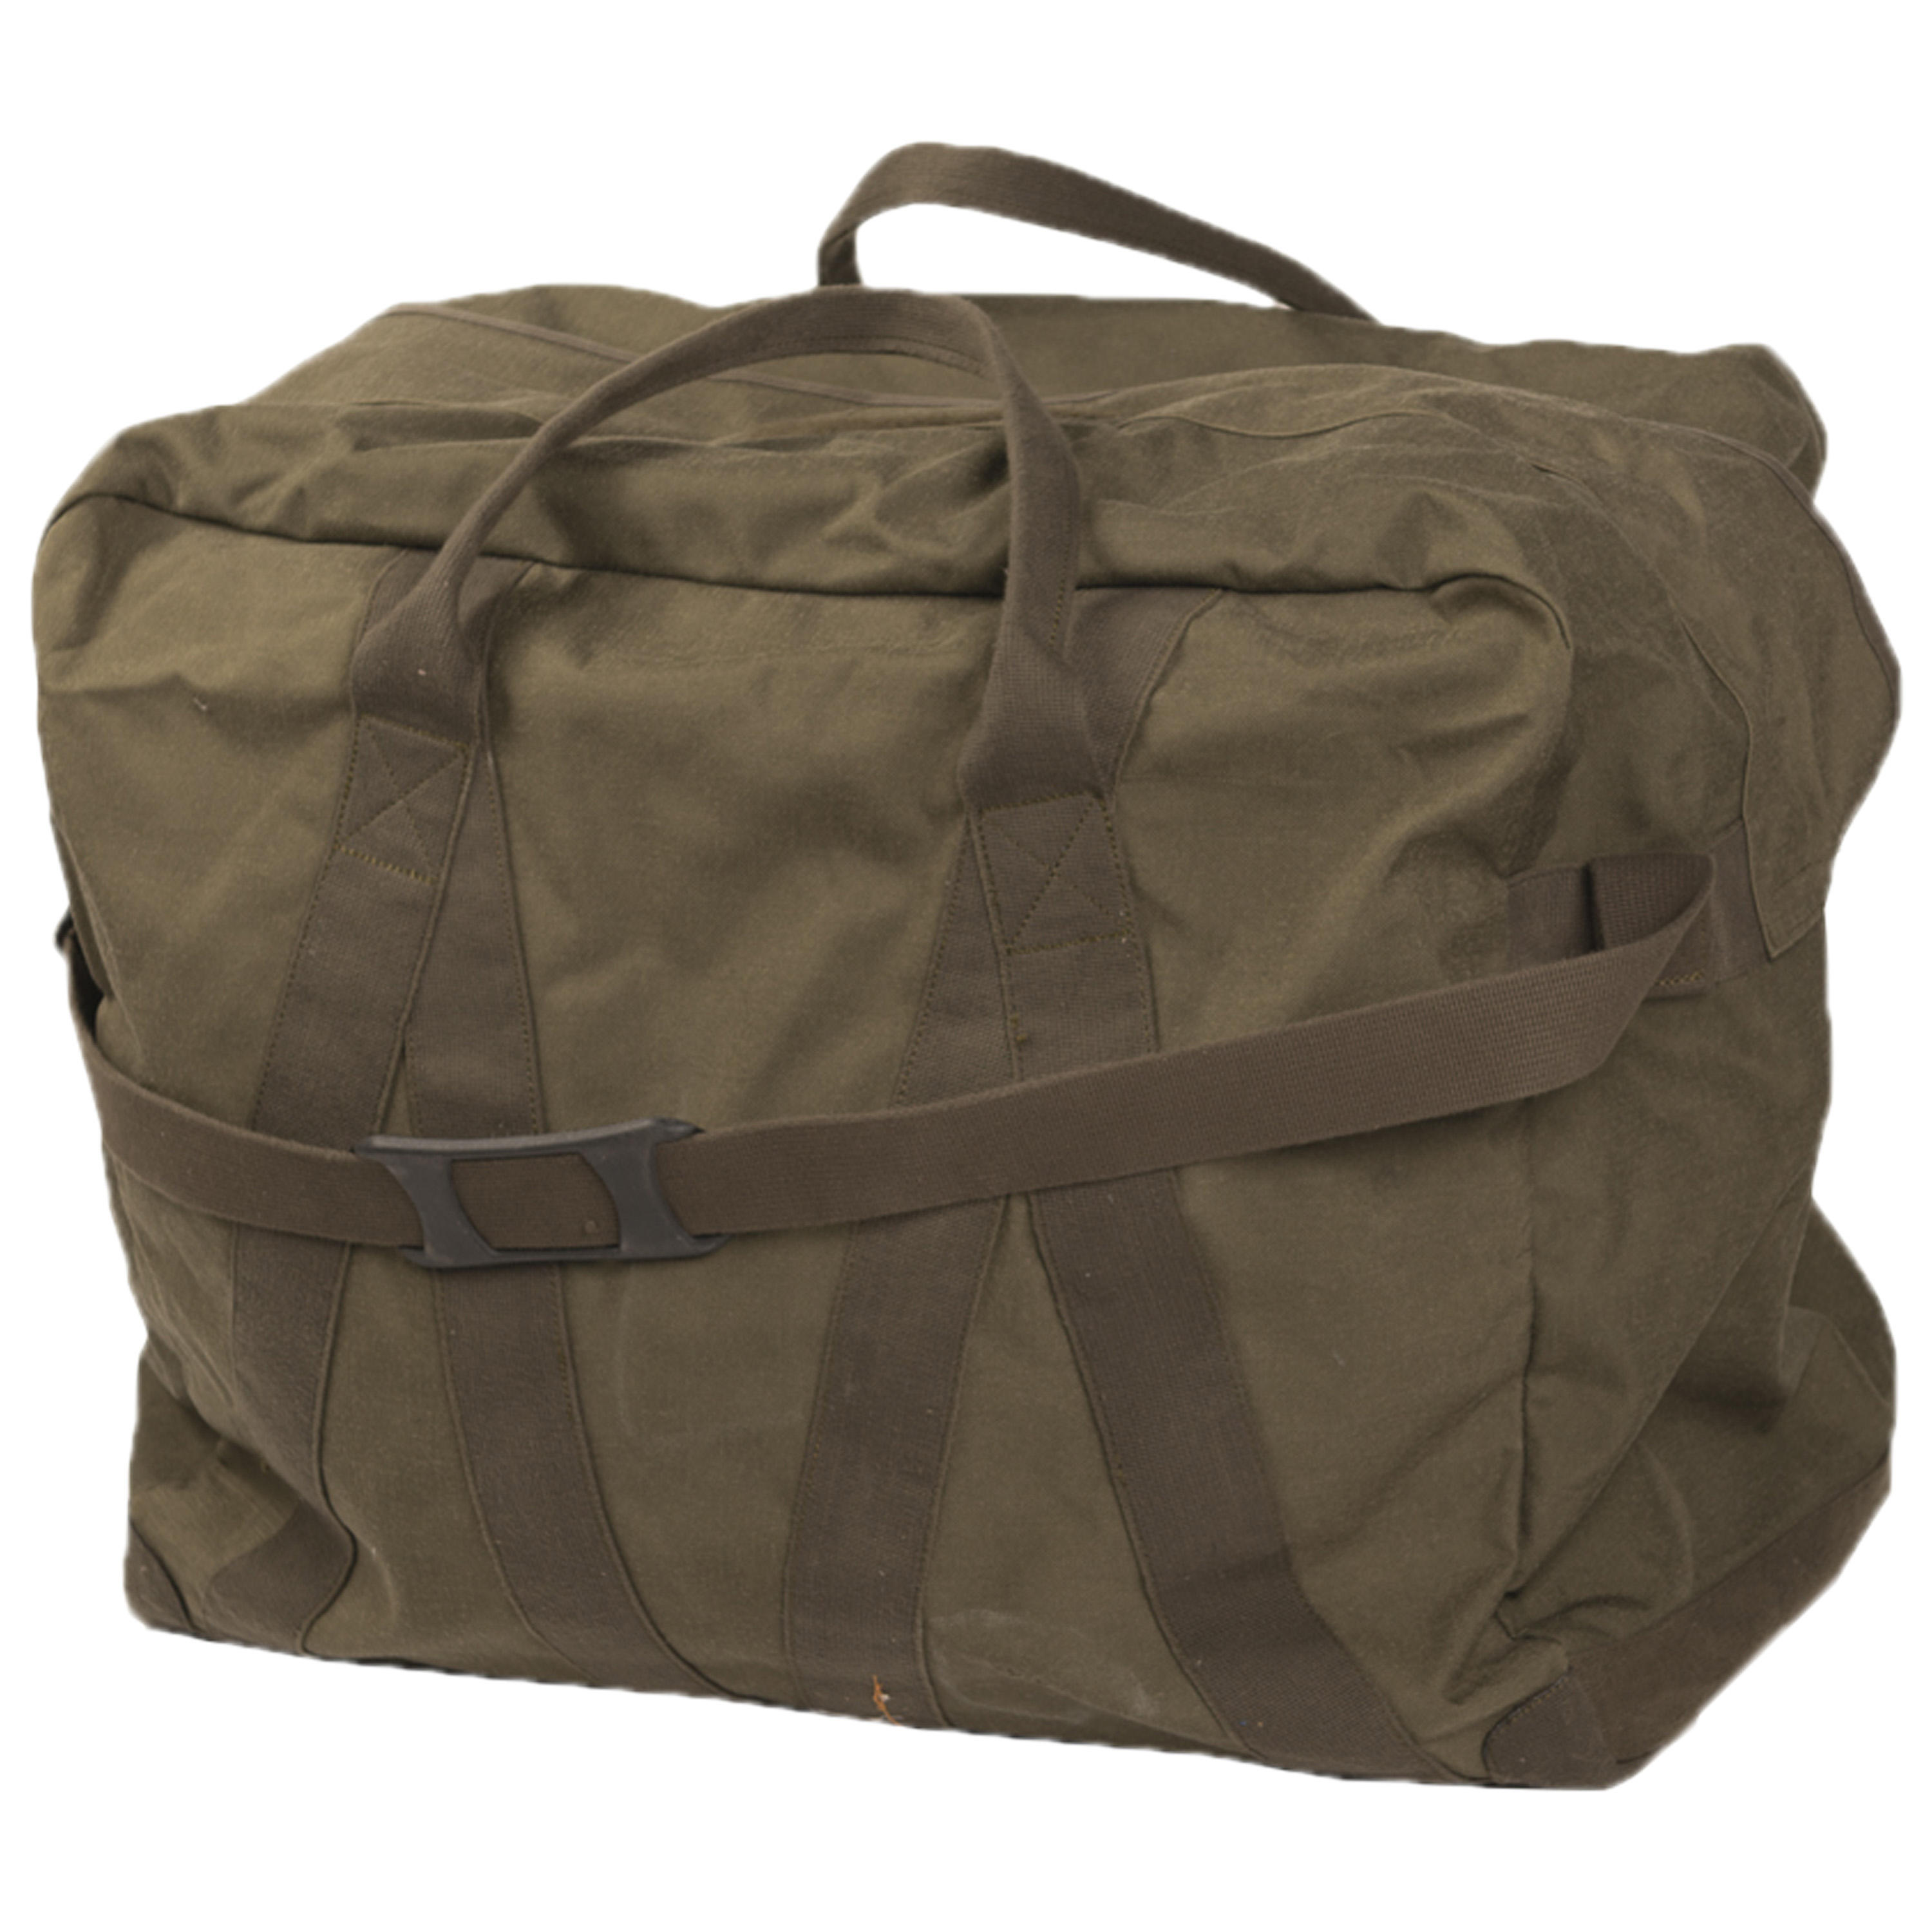 Tragetasche Deployment Bag 4 oliv Sporttasche Army Tasche Reisetasche 